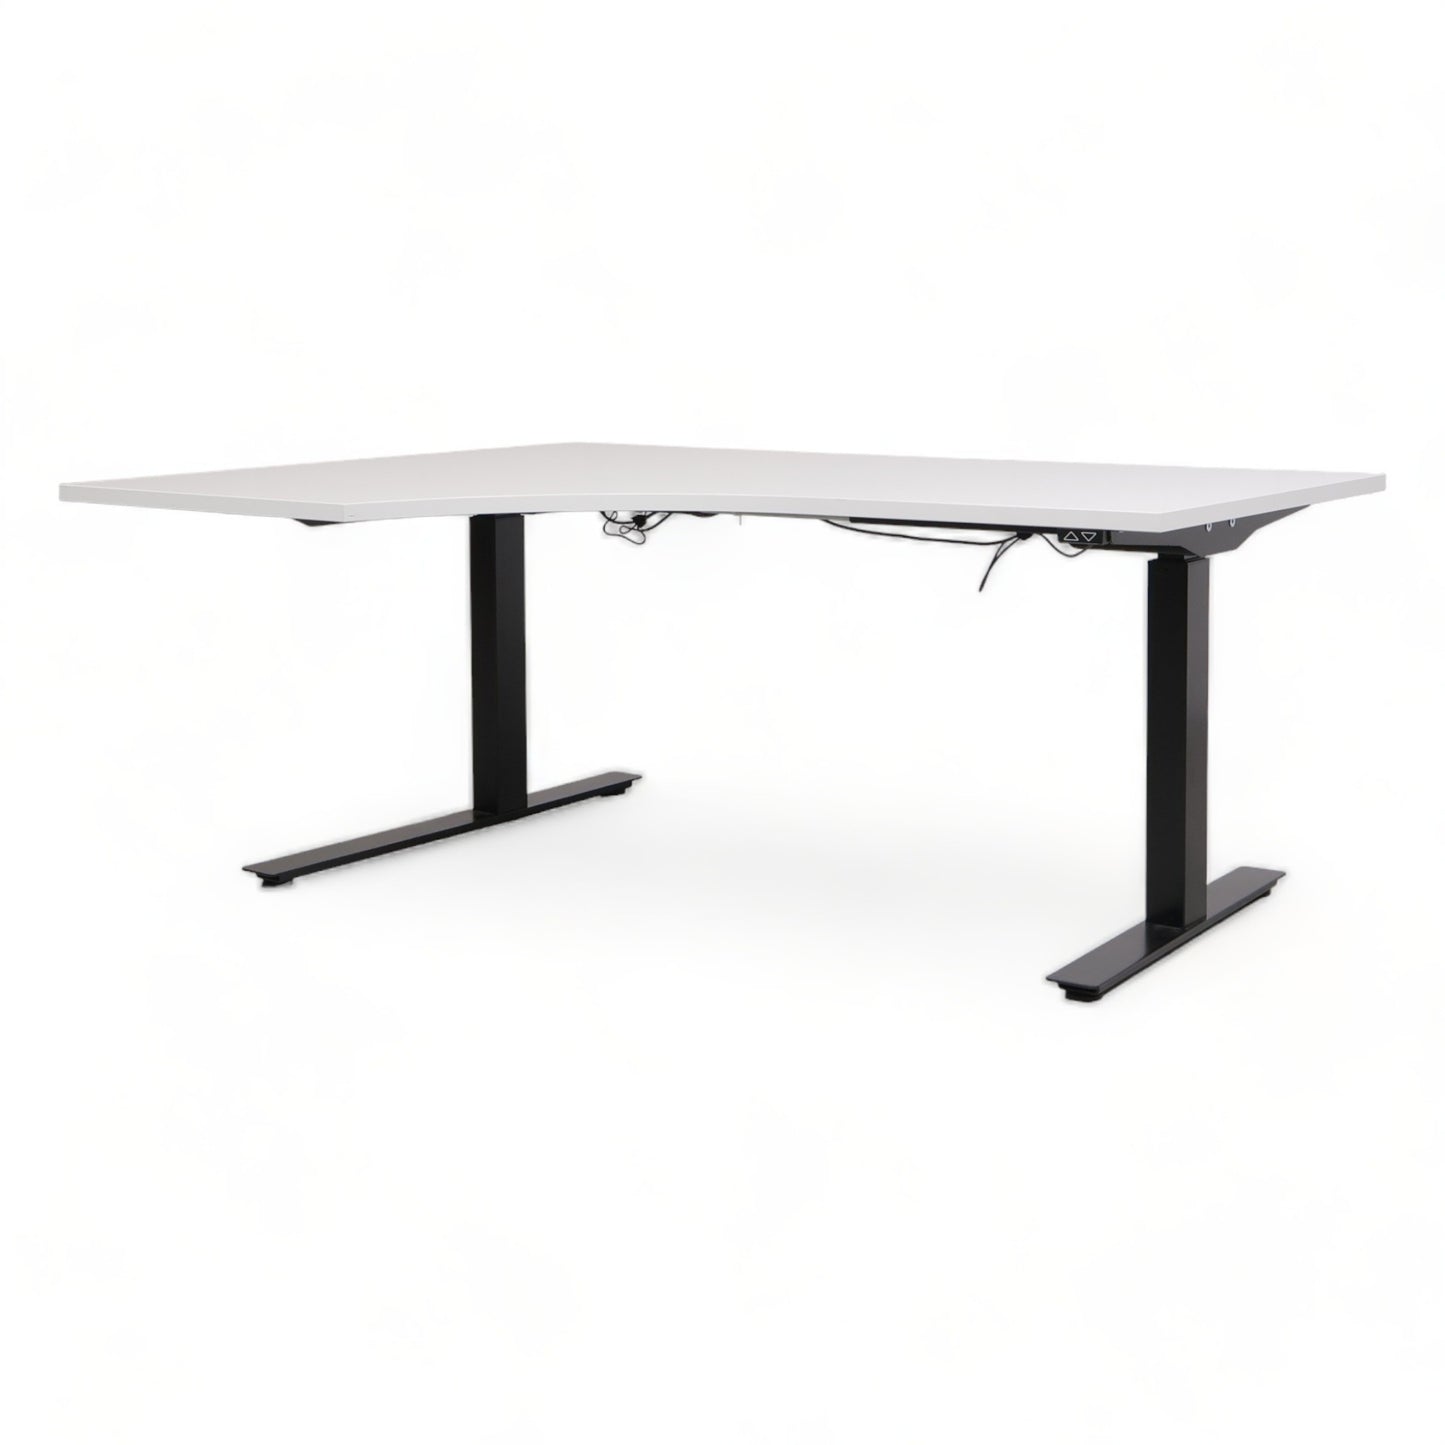 Kvalitetssikret | Elektrisk hev/senk skrivebord med høyresving fra AJ Produkter. 160×120 cm